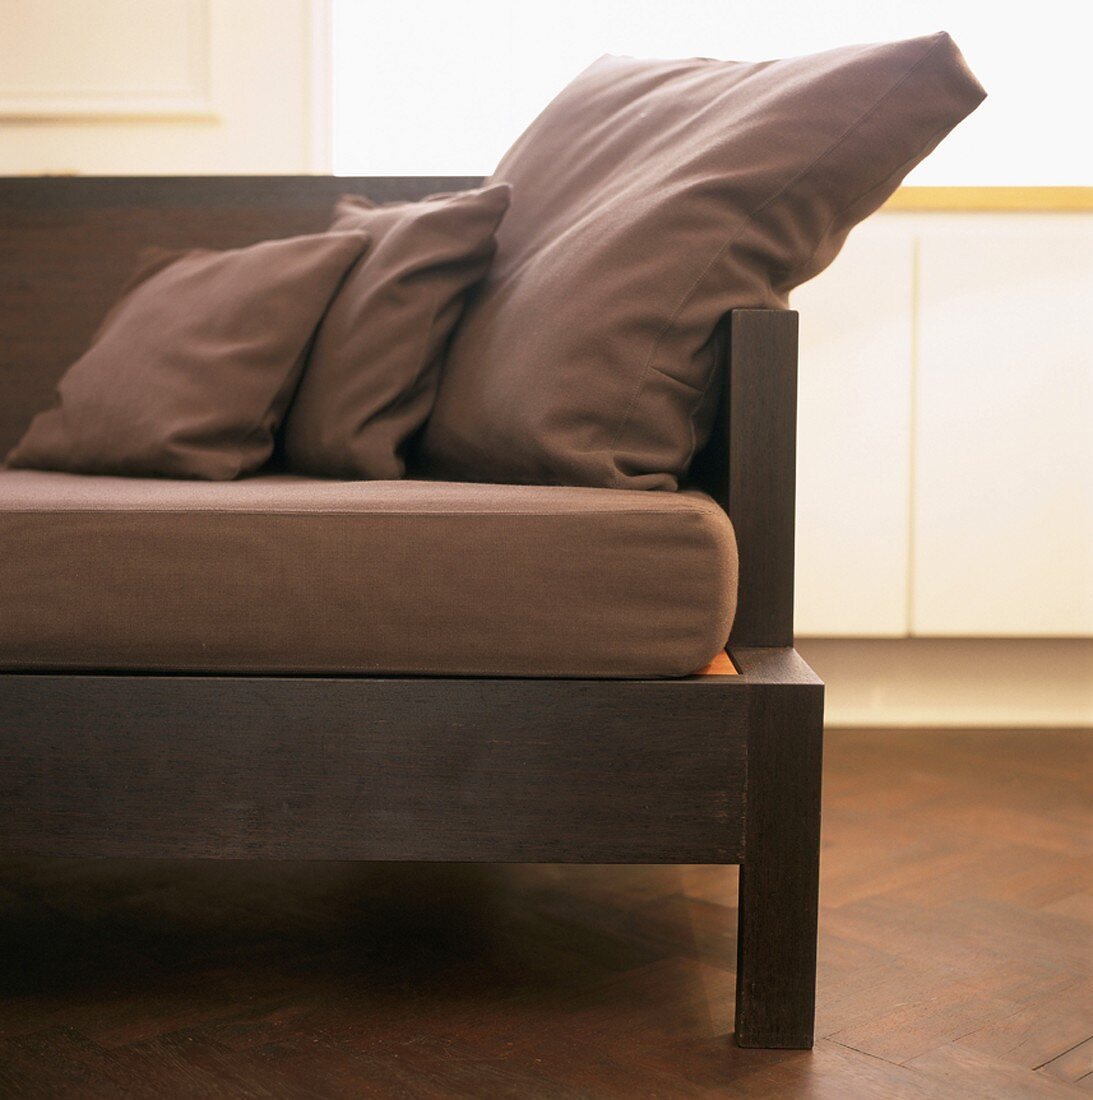 Detail eines eleganten Sofas mit Holzgestell und braunen Polsterkissen